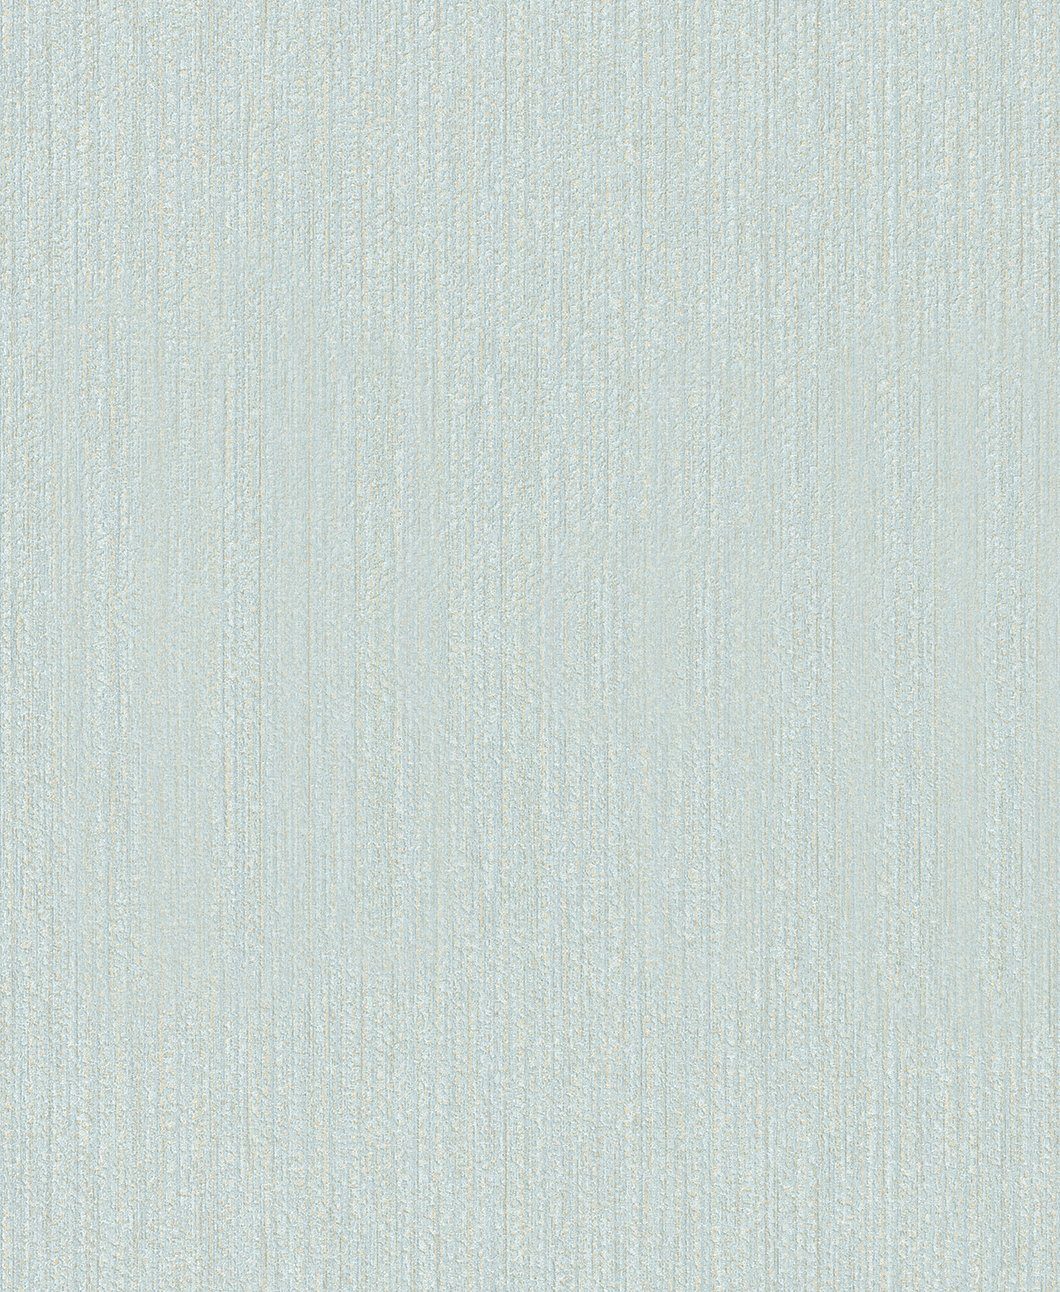 SCHÖNER WOHNEN-Kollektion Vliestapete, realistisch, 0,53 x 10,05 Meter hellblau